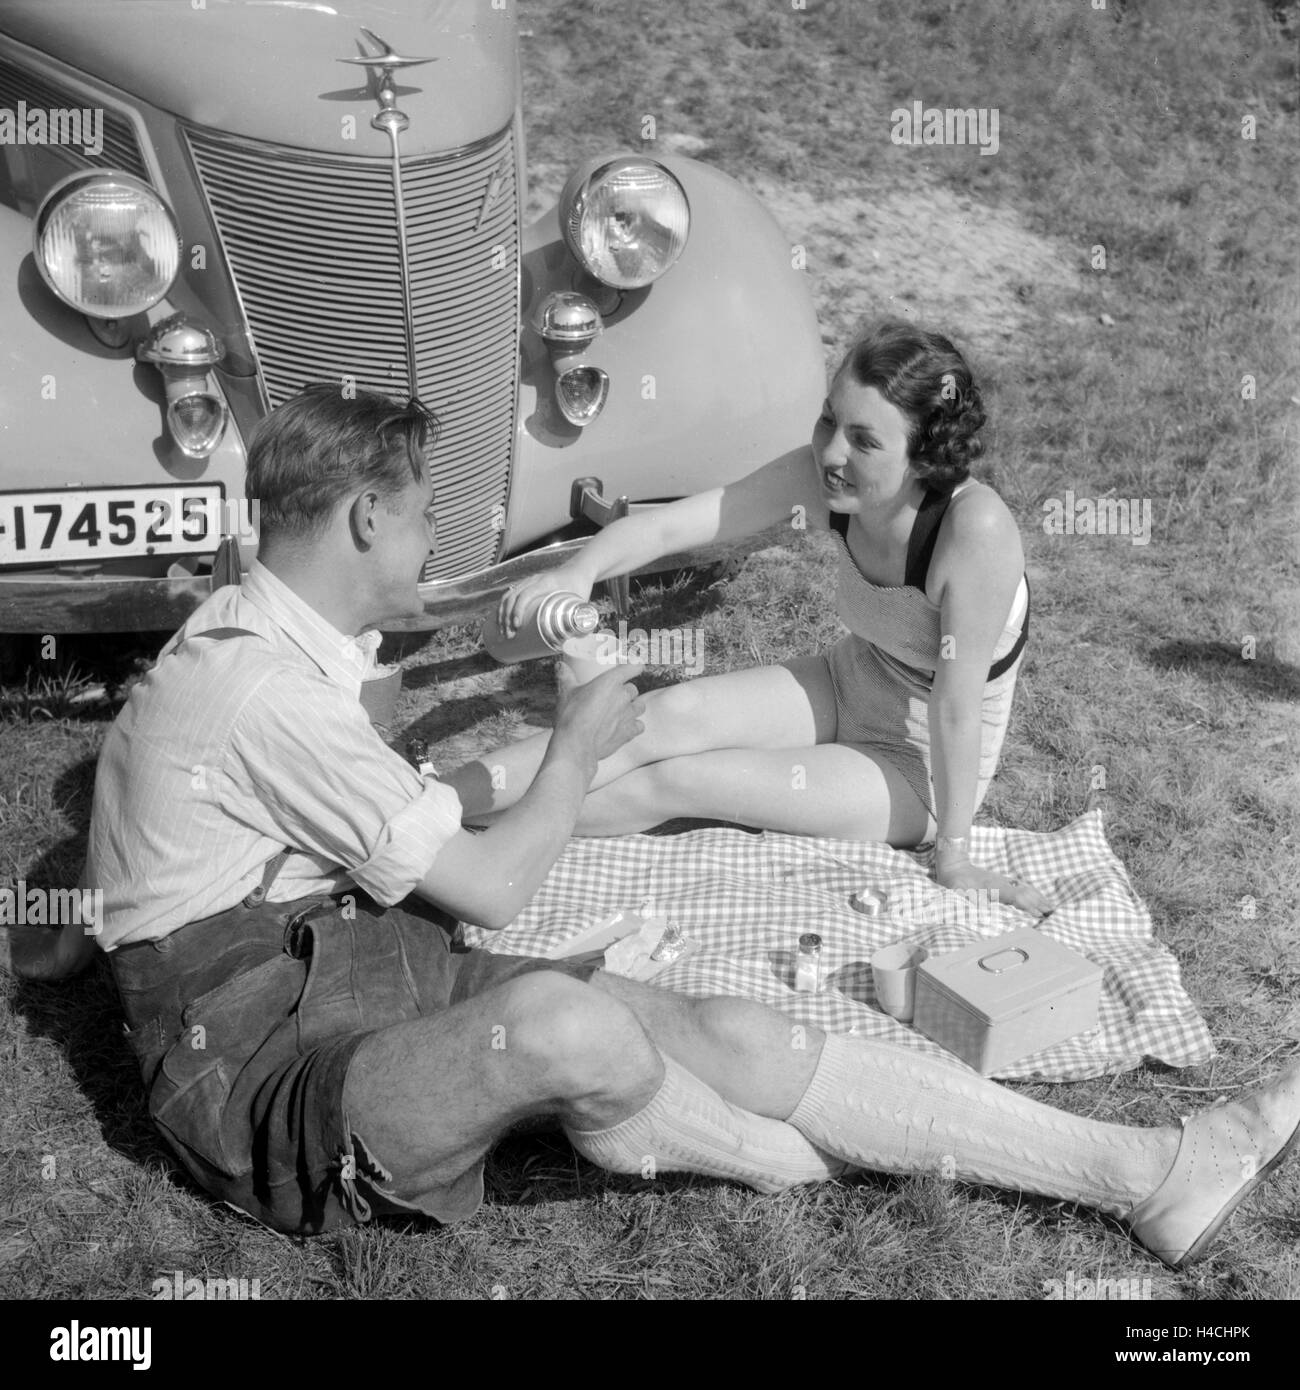 Ein junges Paar beim Picknick vor einem Ford V6, Deutschland 1930er Jahre. Una giovane coppia avente un pick nick nella parte anteriore di una Ford V8, Germania 1930s. Foto Stock